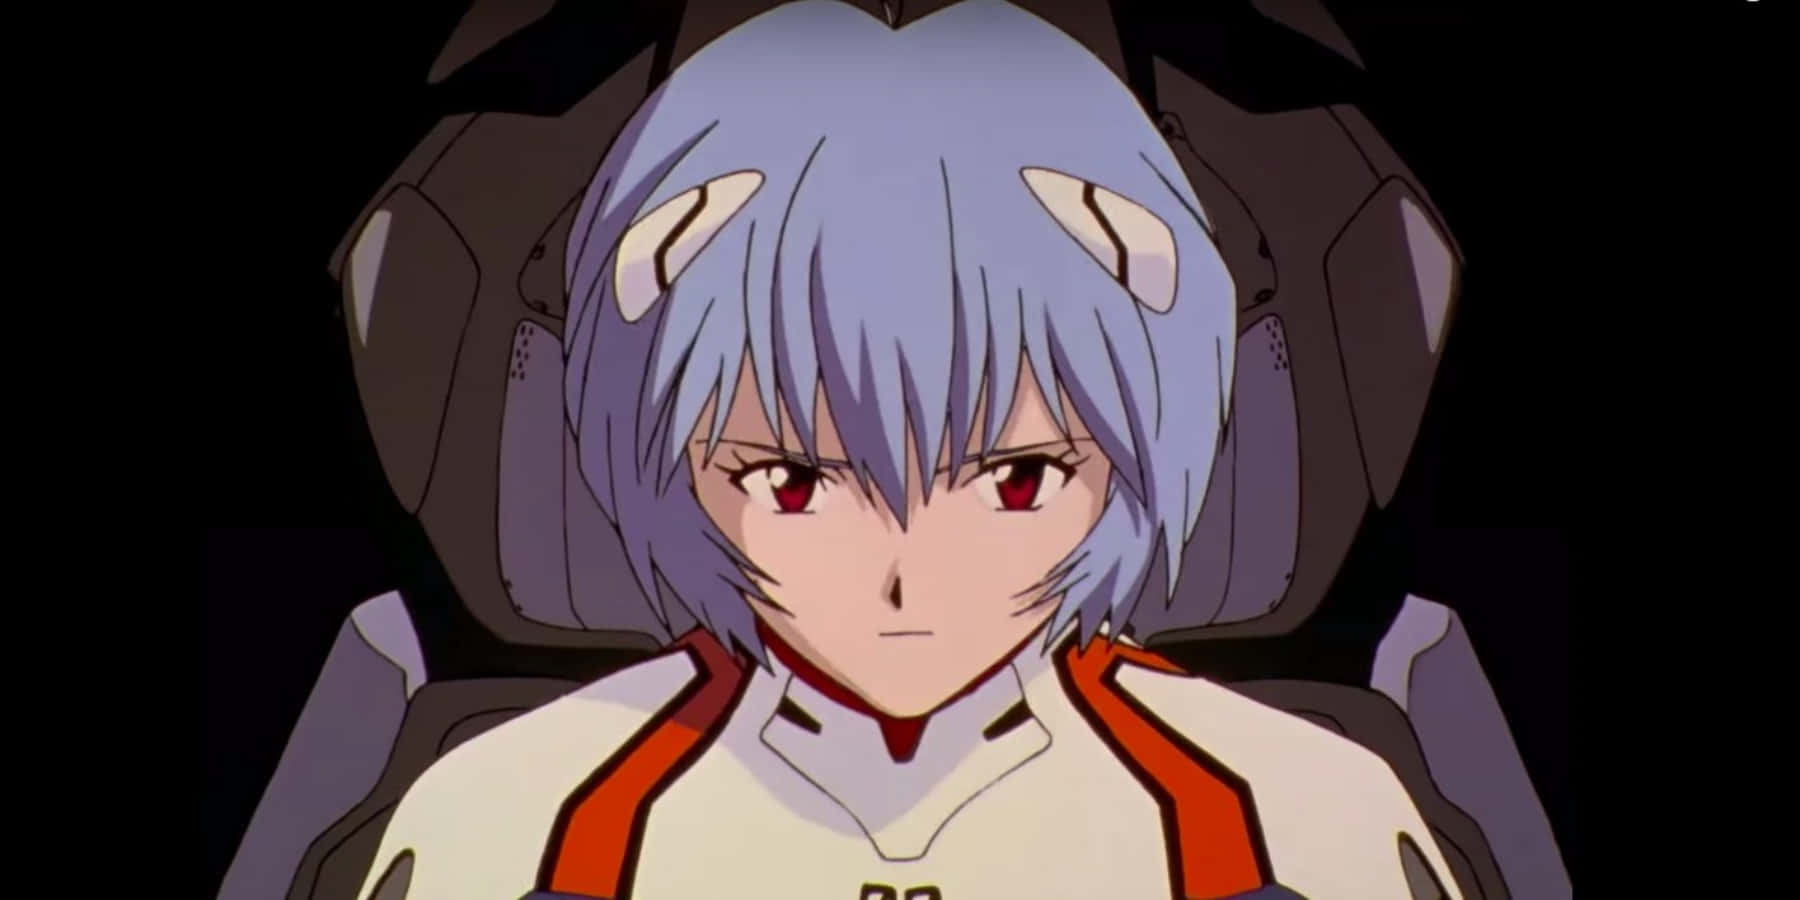 Fange et øjeblik af stilhed mellem Shinji og Eva-01 i Neon Genesis Evangelion.